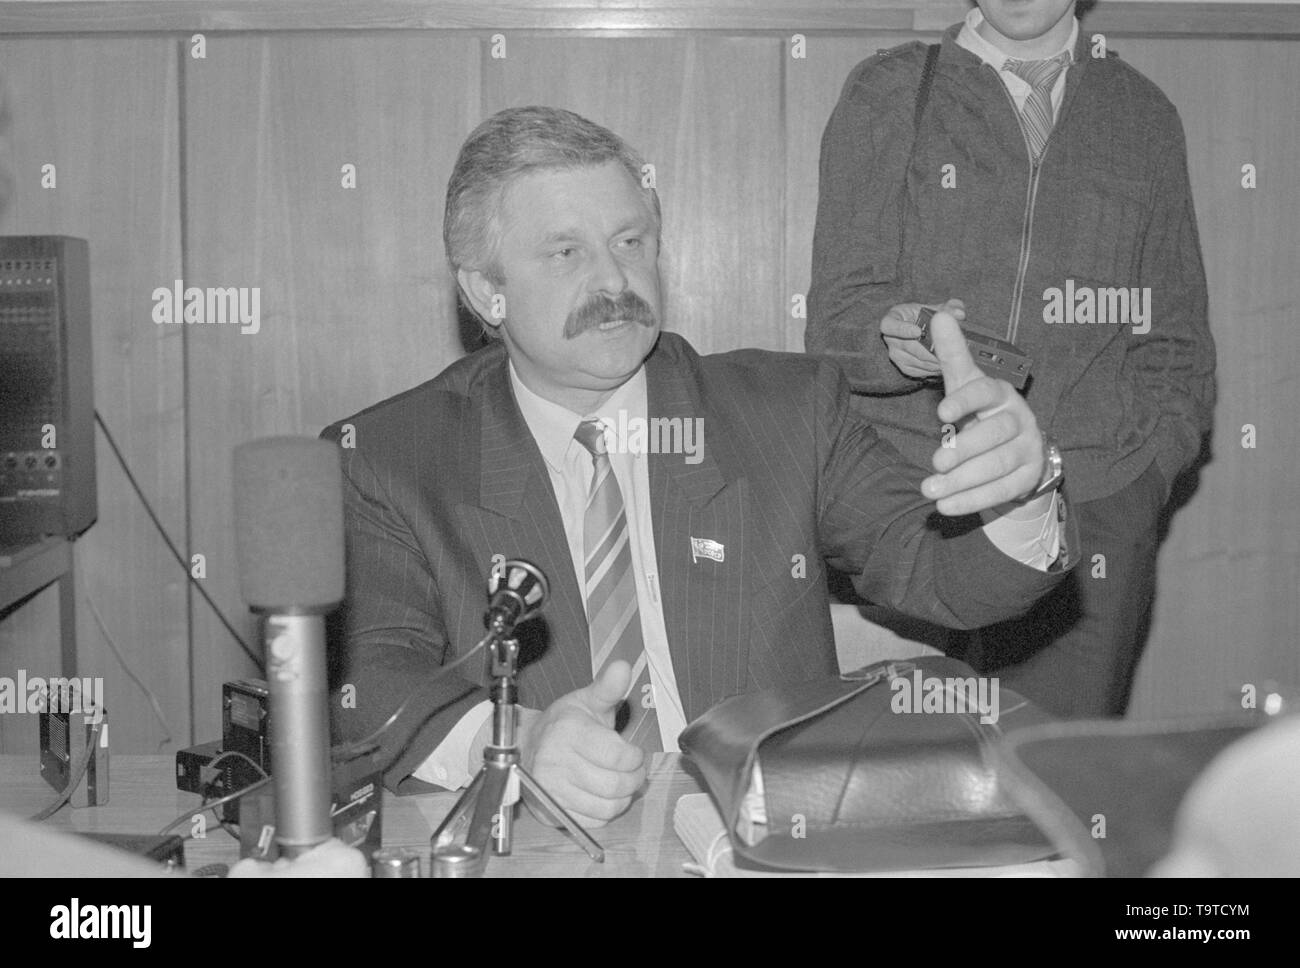 Moscou, Russie - le 28 mars 1991 : un député du peuple de la RSFSR Alexander Vladimirovitch Routskoï donne à la conférence de presse extraordinaire 3d Congrès des députés du peuple de la RSFSR russe. Banque D'Images